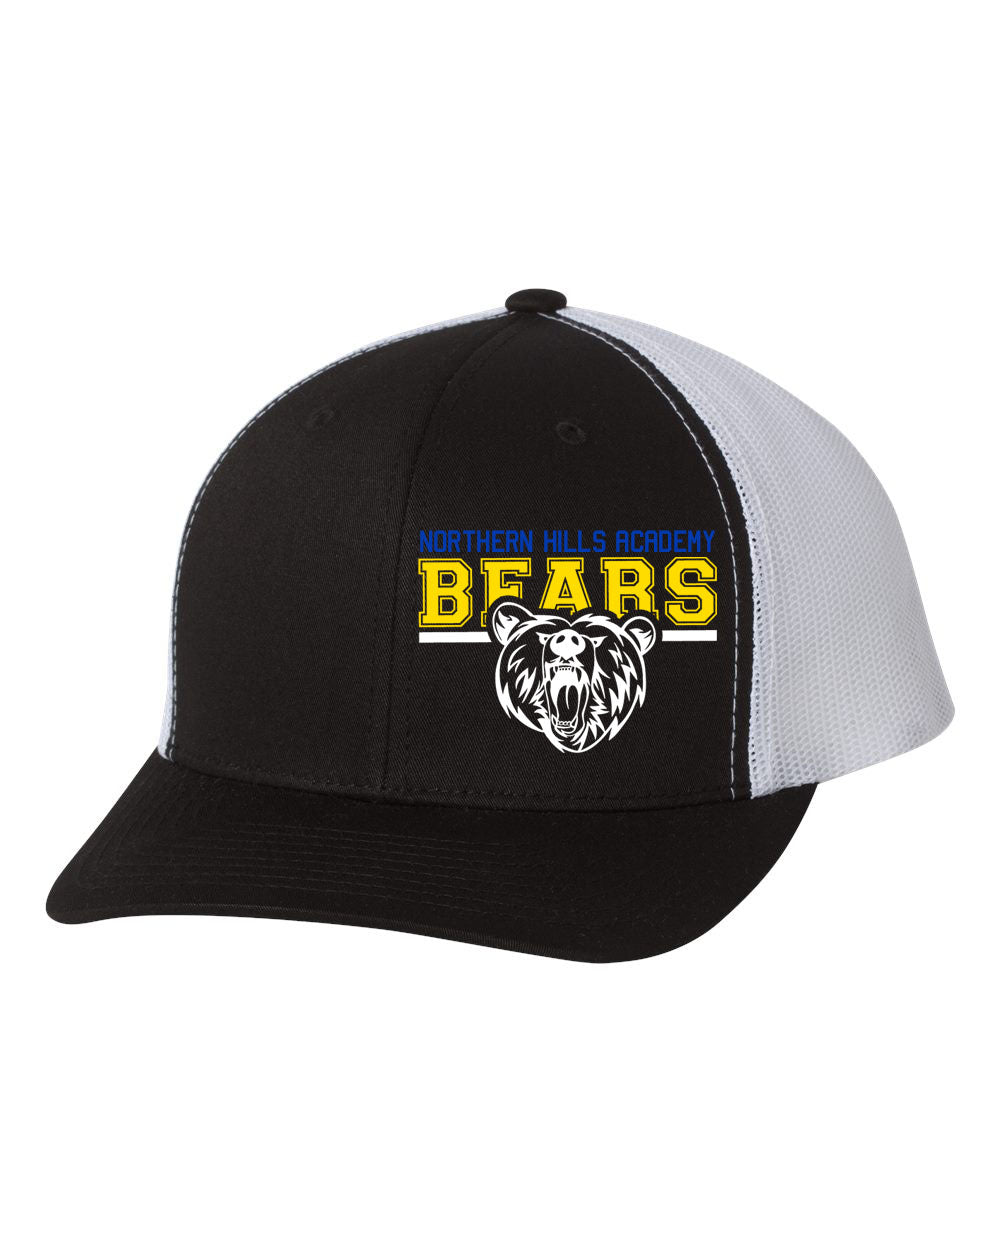 NH Bears Trucker Hat